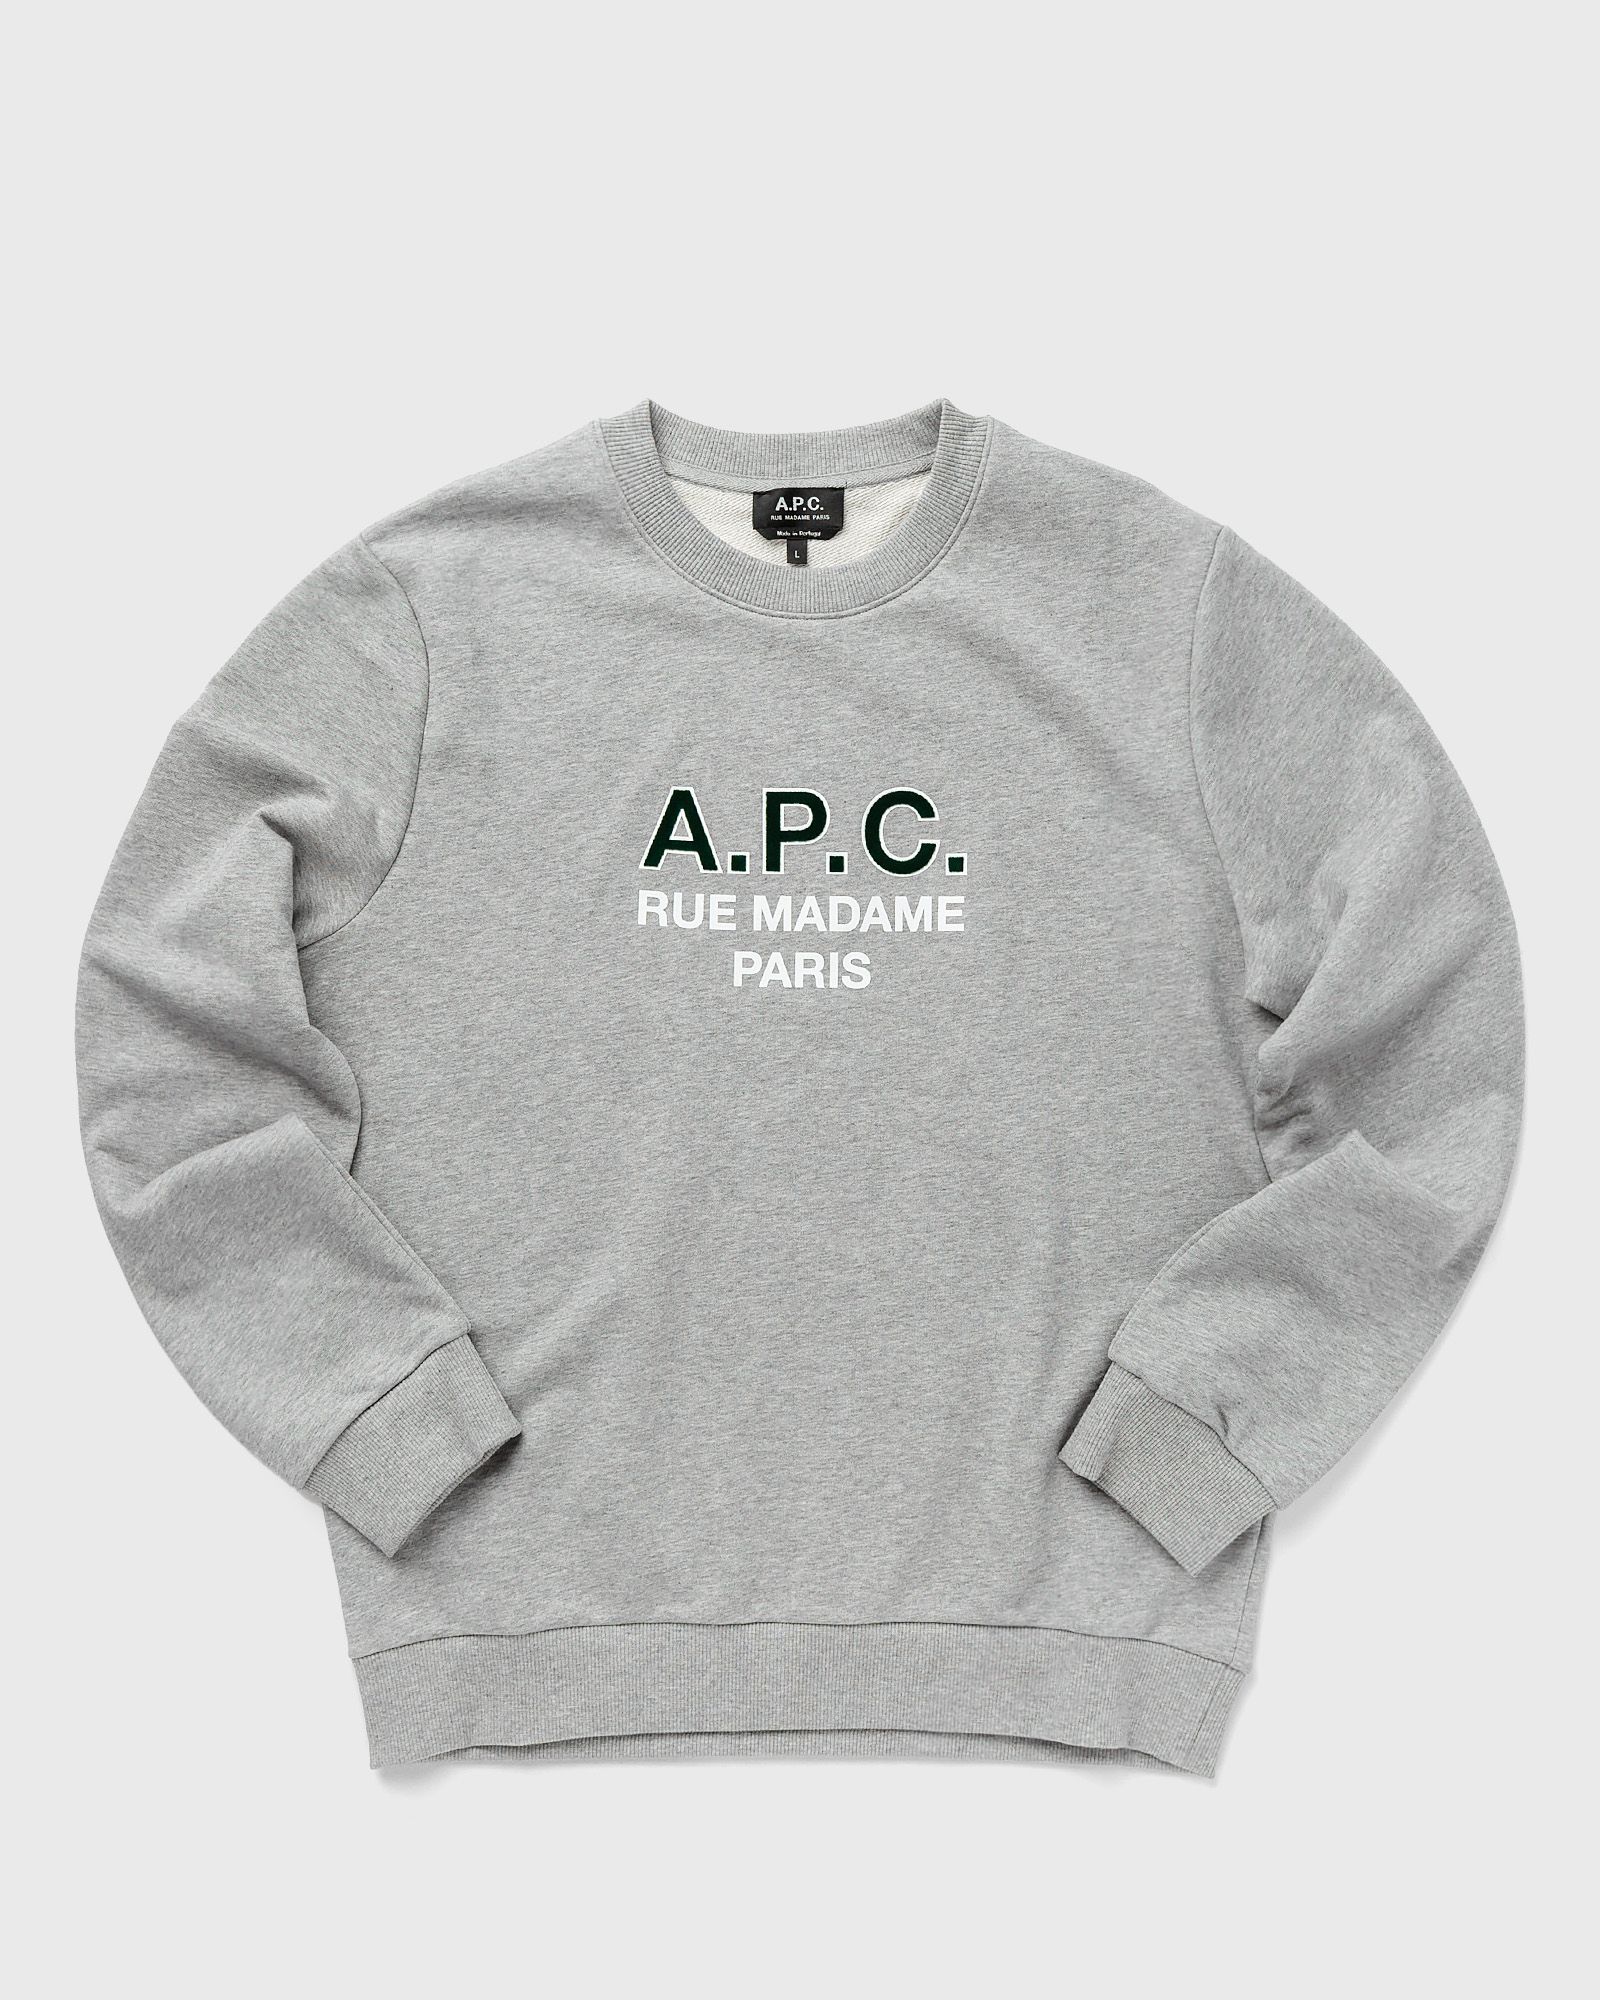 A.P.C. Sweat apc madame h men Sweatshirts grey in Größe:XL von A.P.C.